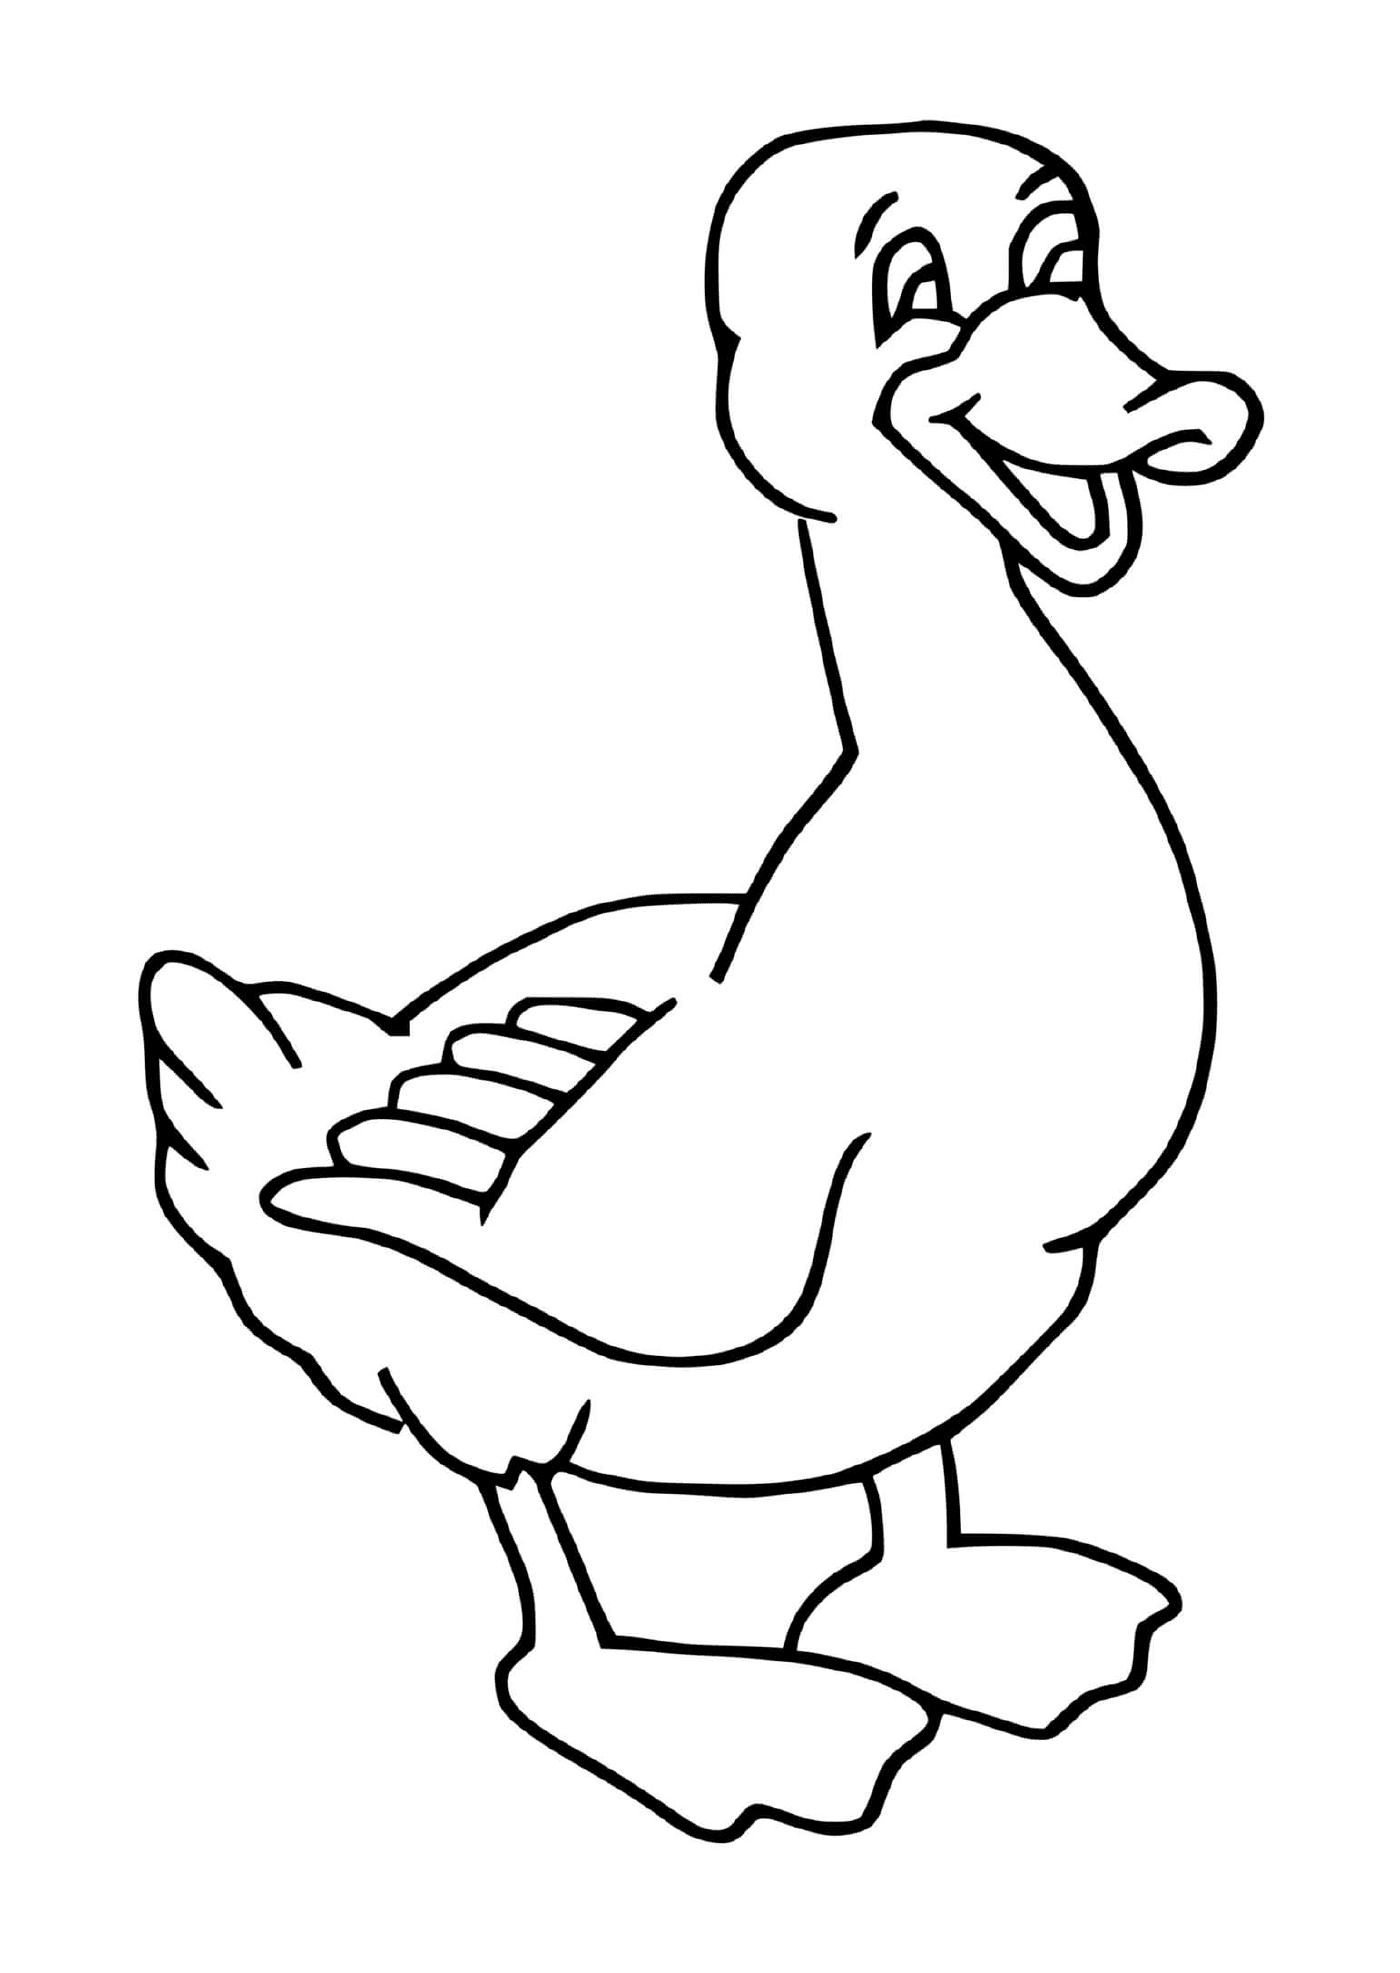  eine wilde Ente auf einer Pfote mit offenem Schnabel 